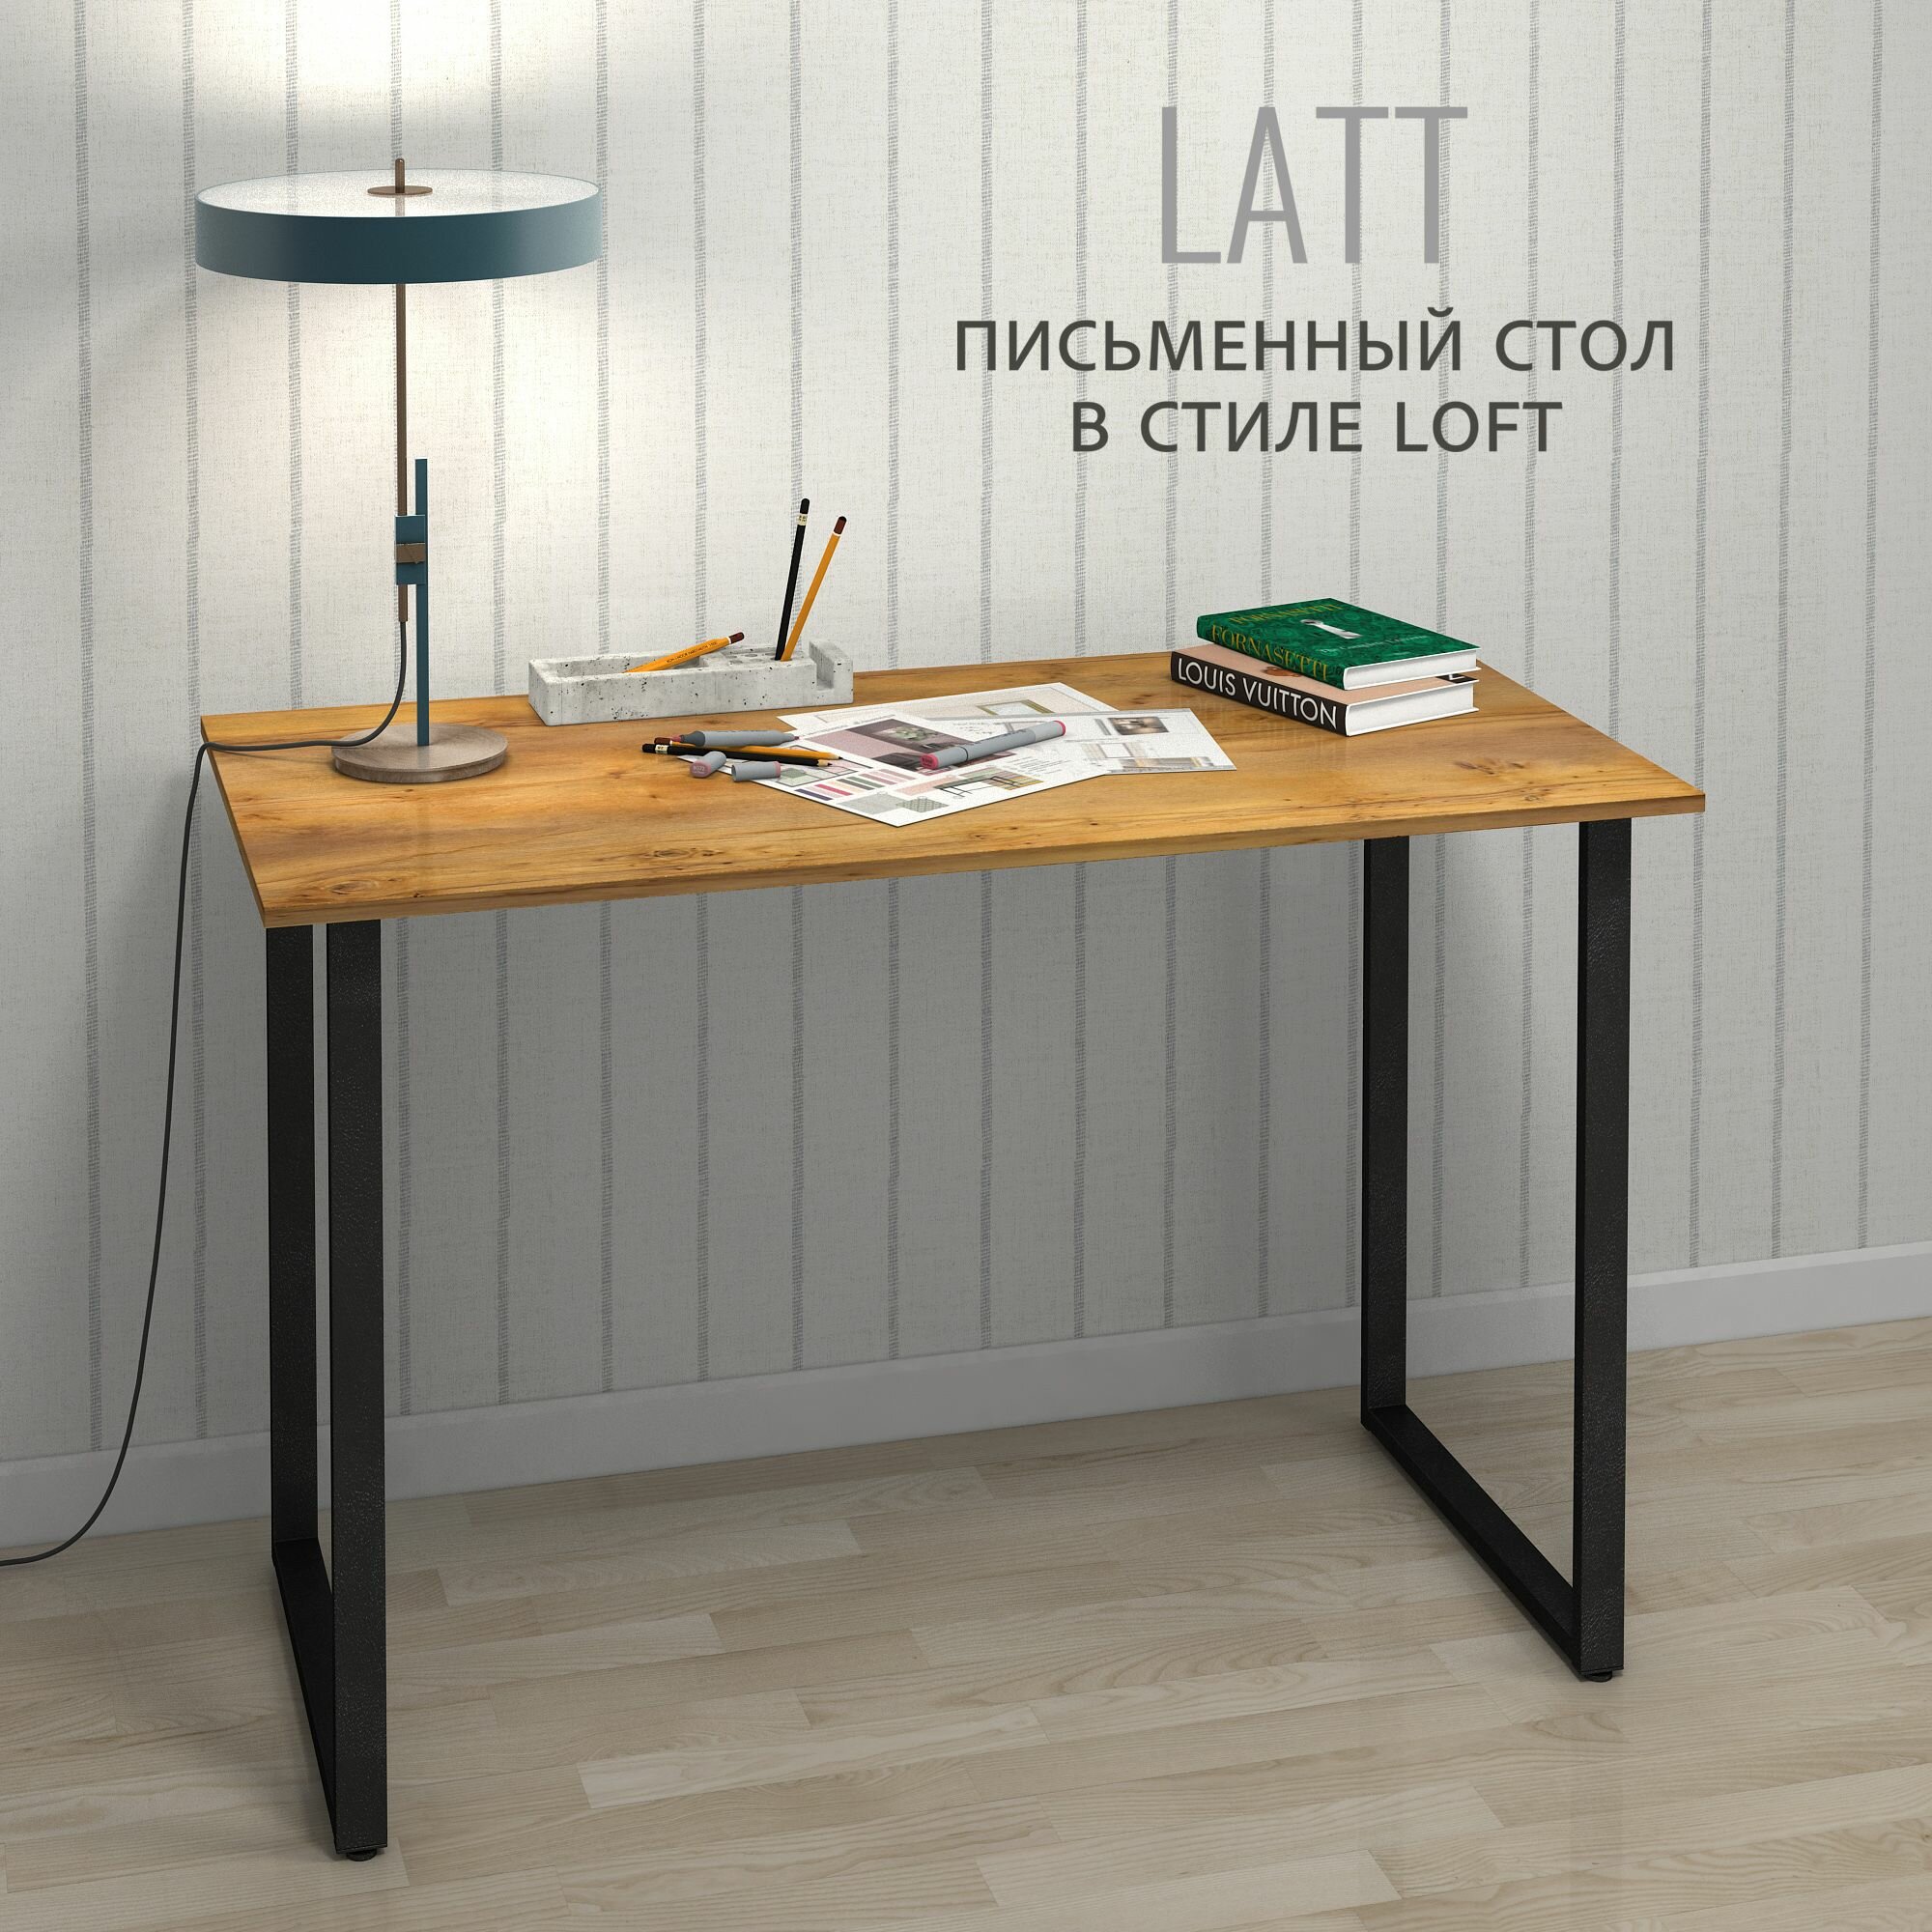 Стол письменный LATT max белый компьютерный офисный обеденный мебель лофт 110х55х75 см 1шт Гростат